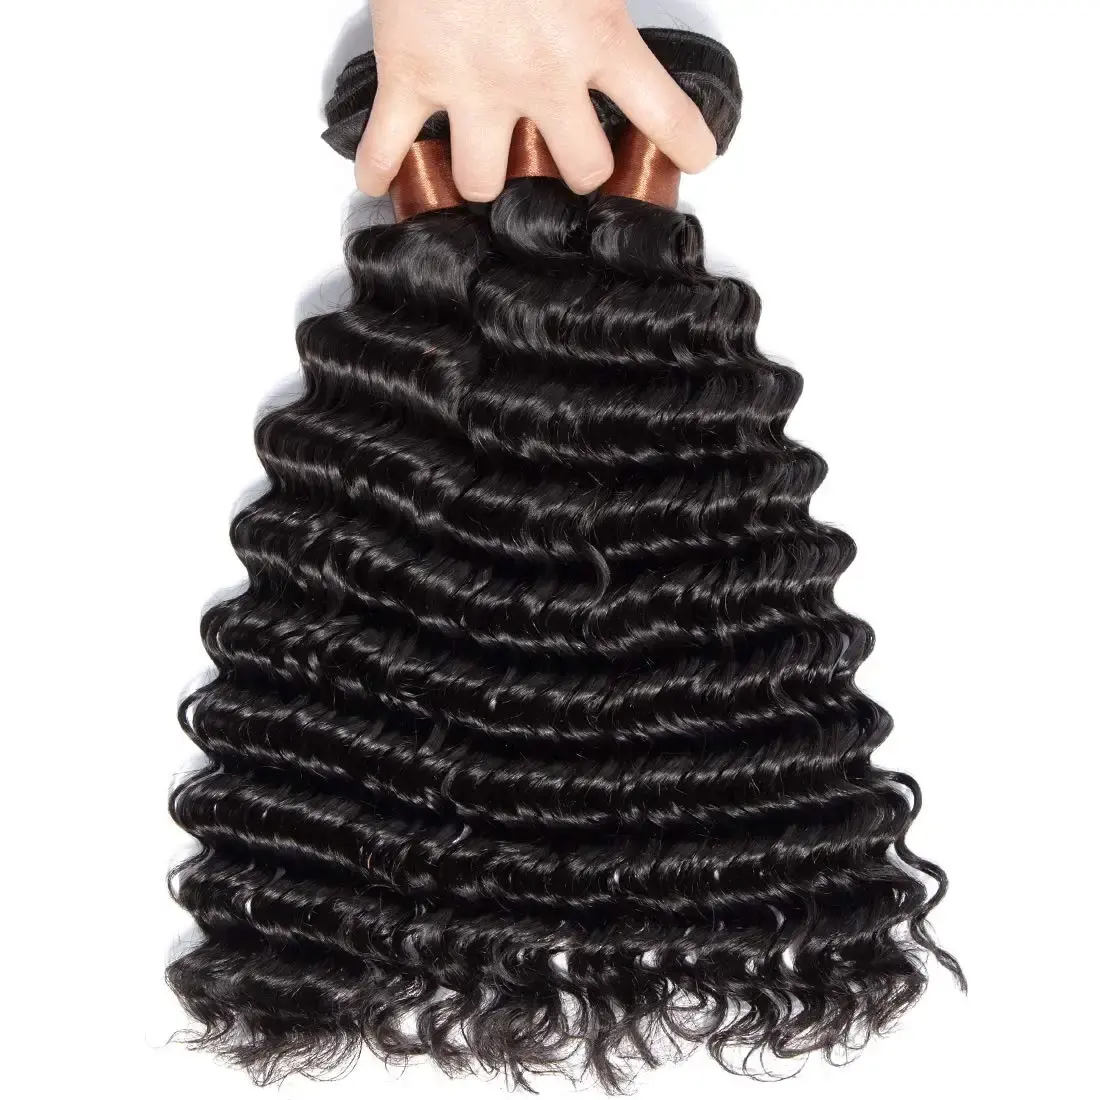 RU yeni moda derin dalga doğal siyah renk 100% insan saçı 12 ila 32 inç el yapımı demetleri kadın saç uzatma